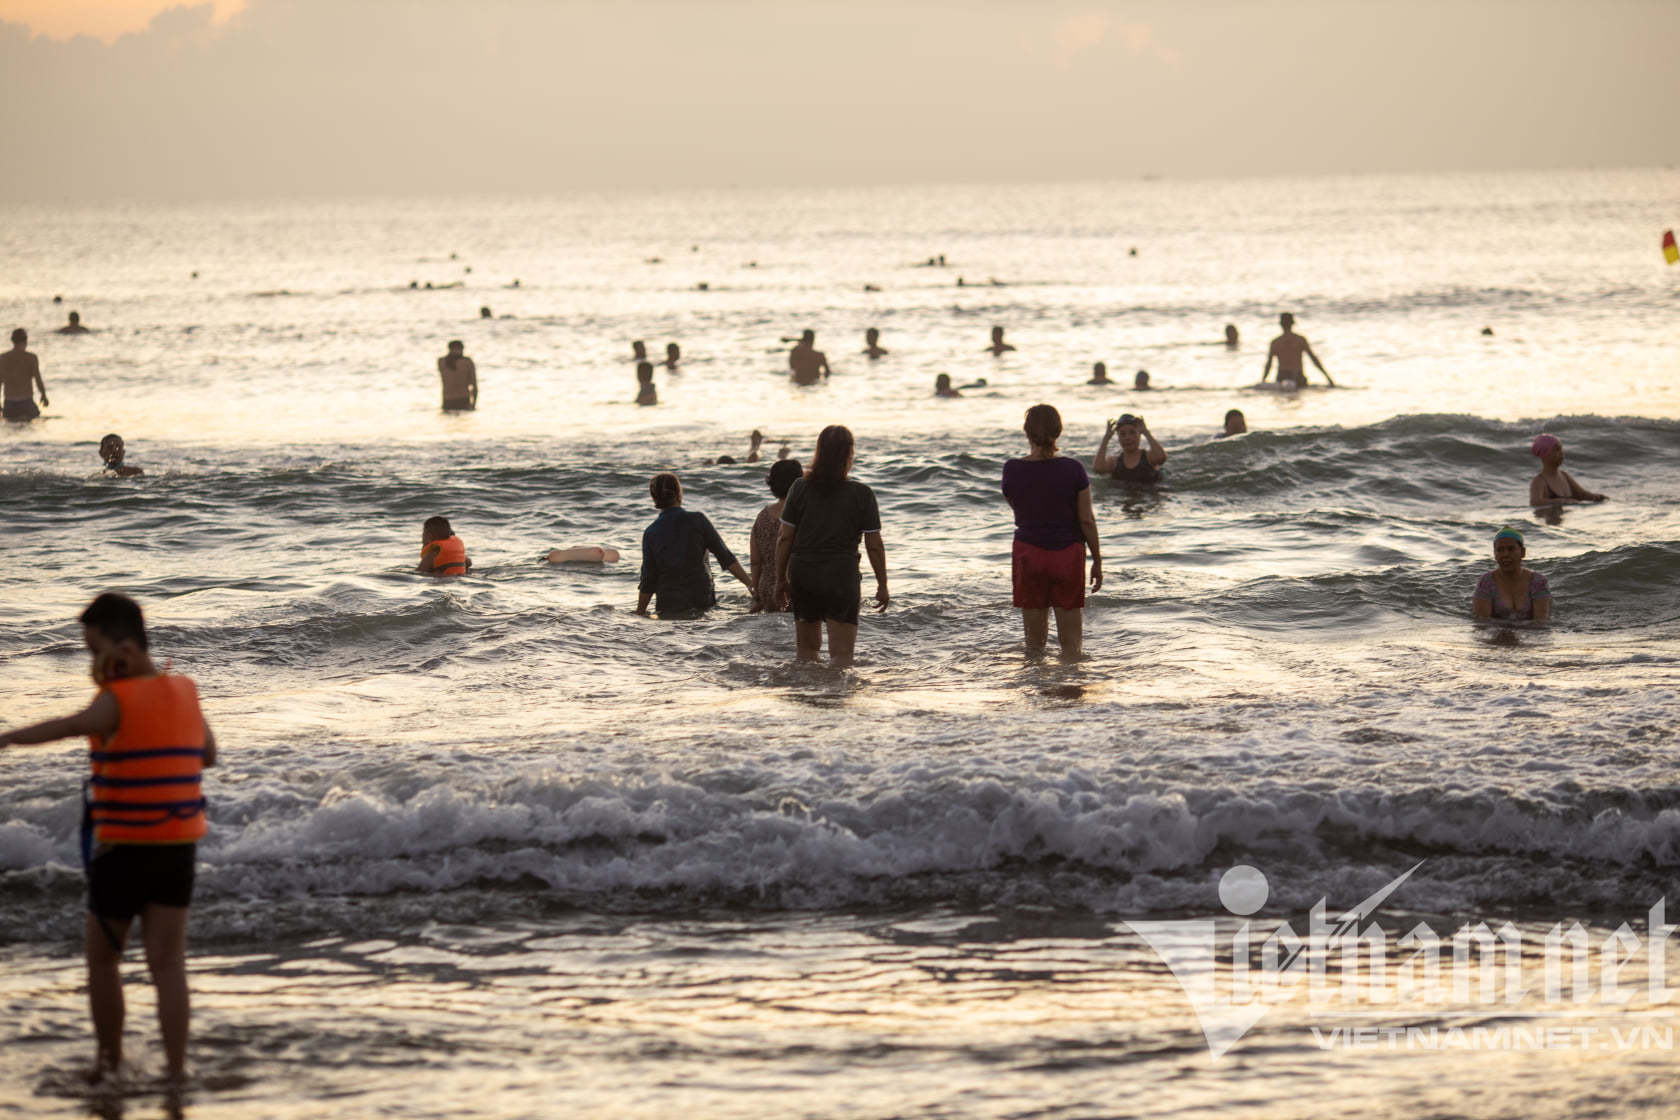 Đà Nẵng cho phép người dân tắm biển từ 4h30 đến 6h30 